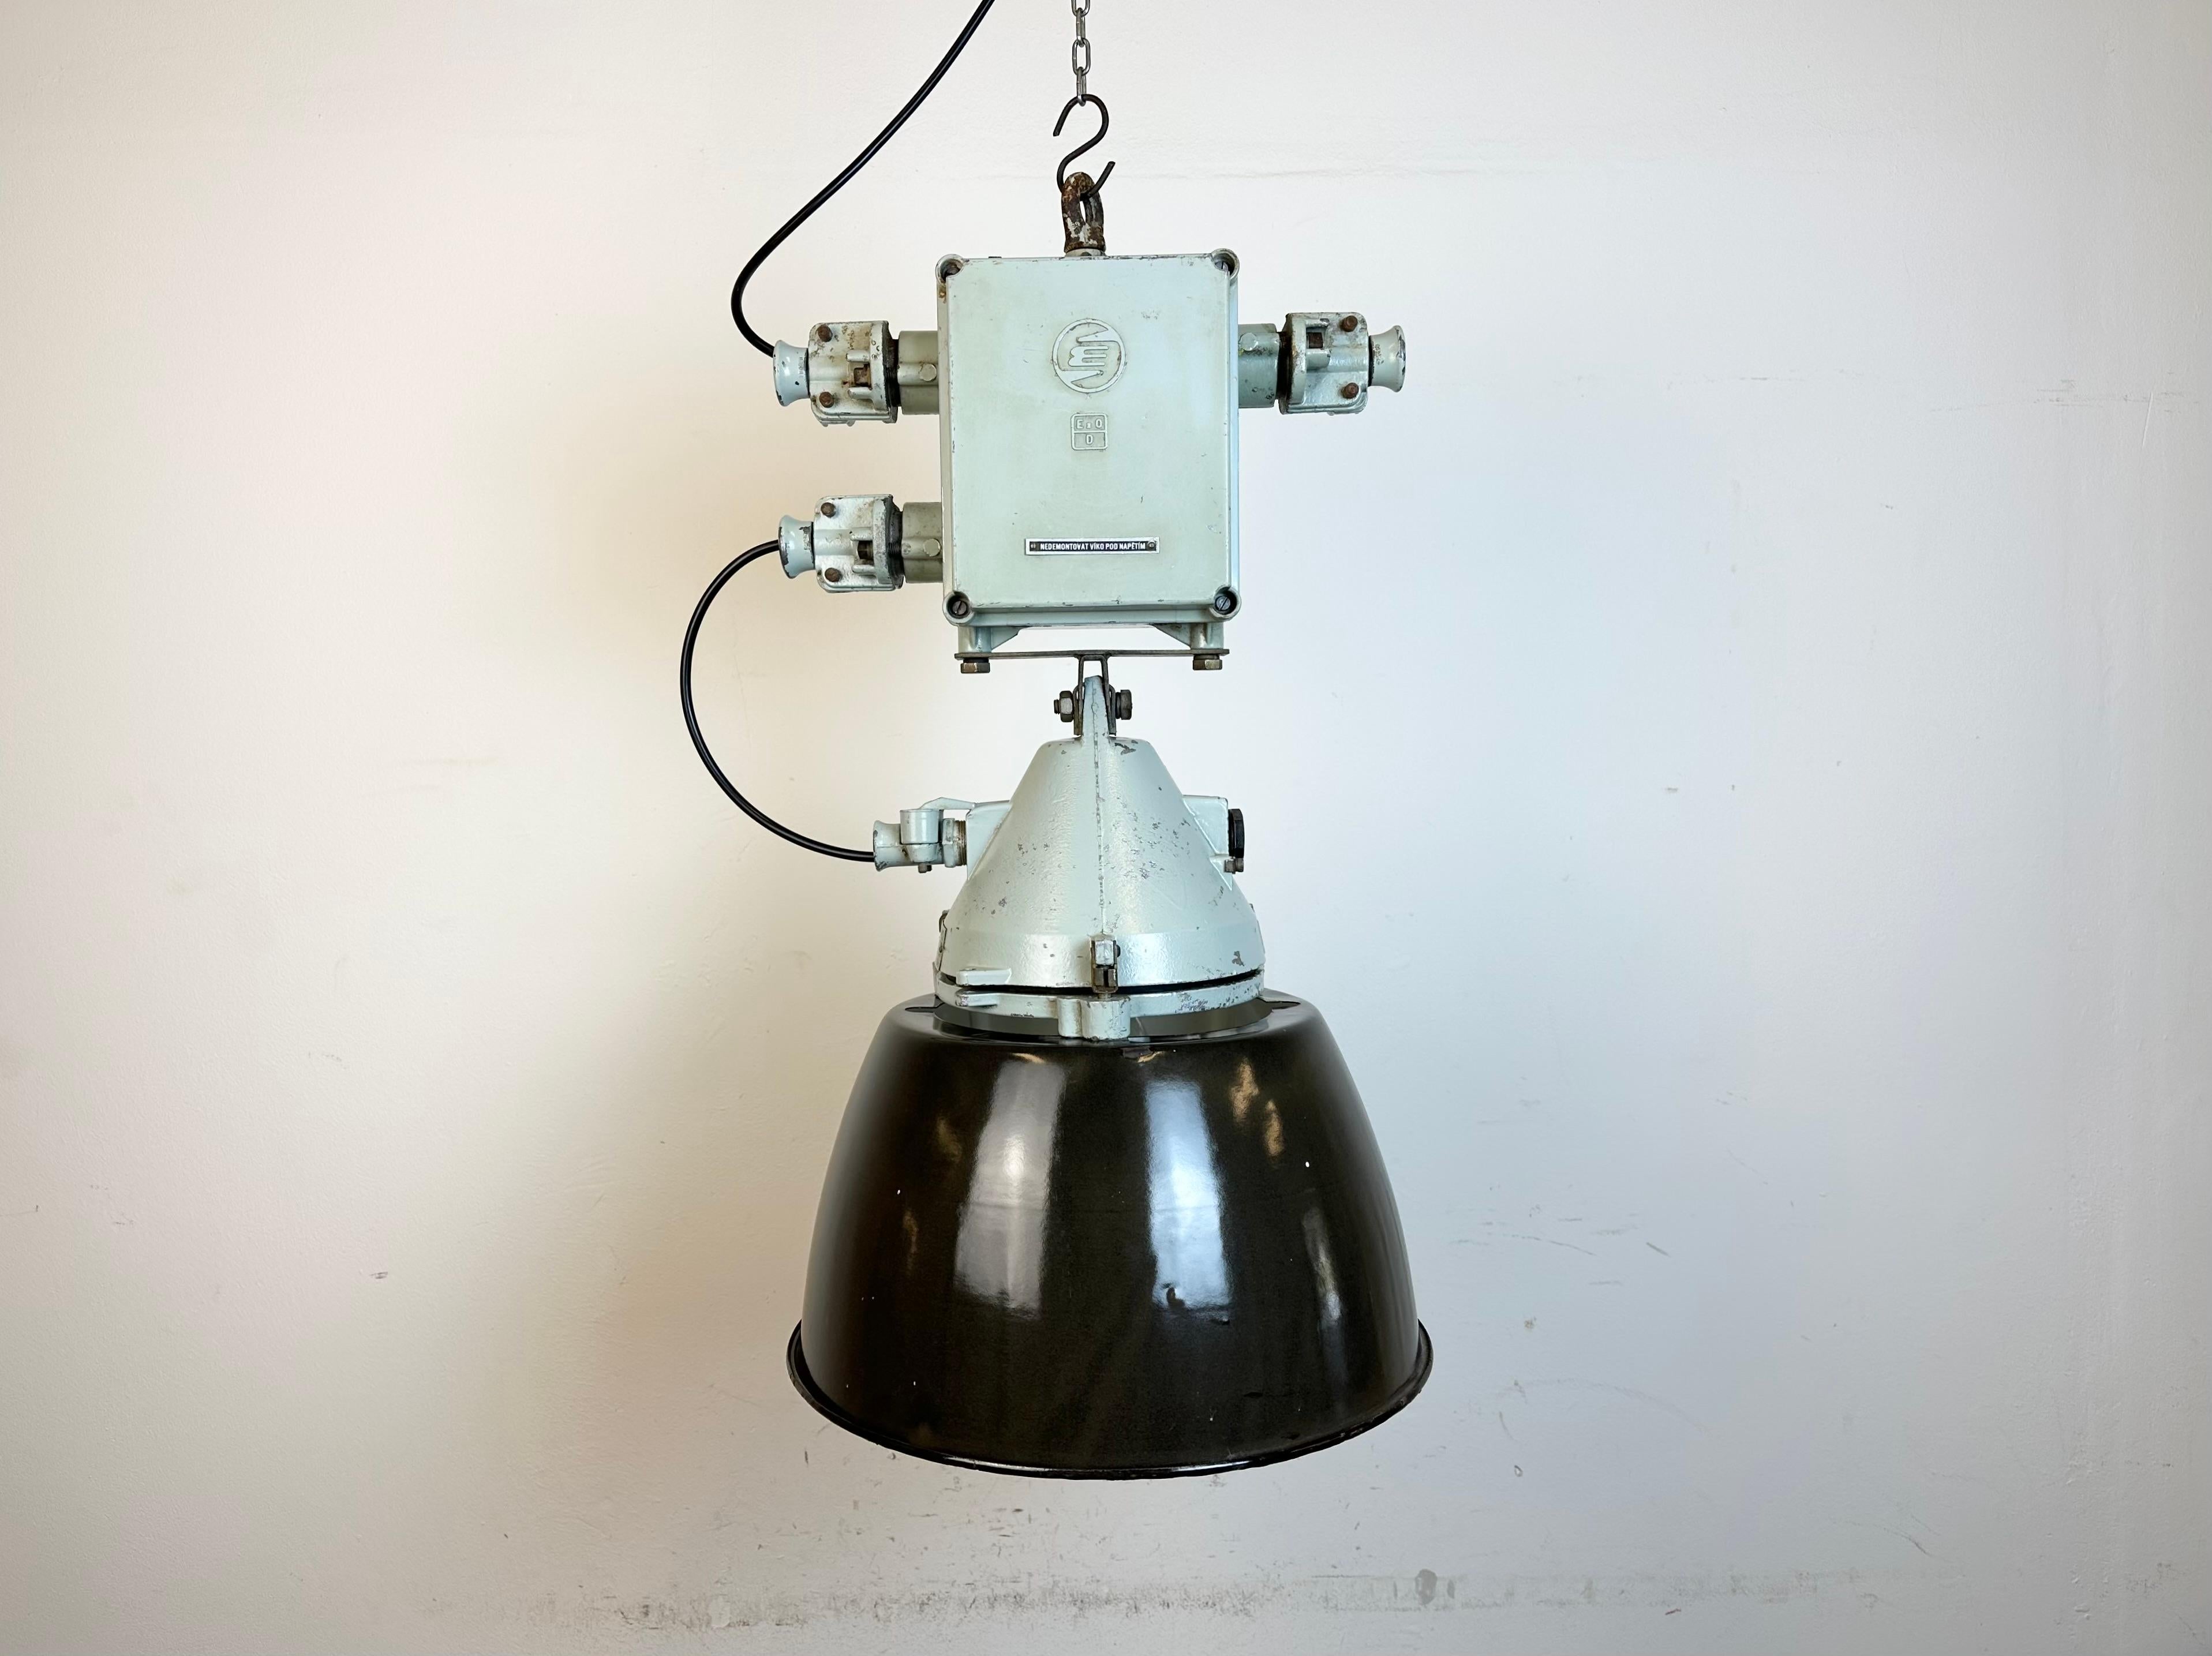 Graue Industrielampe mit massivem Schutzglaskolben, hergestellt von Elektrosvit in der ehemaligen Tschechoslowakei in den 1970er Jahren, mit einem Korpus aus grauem Aluminiumguss, klarem Glas und einem schwarz emaillierten Schirm mit weißer